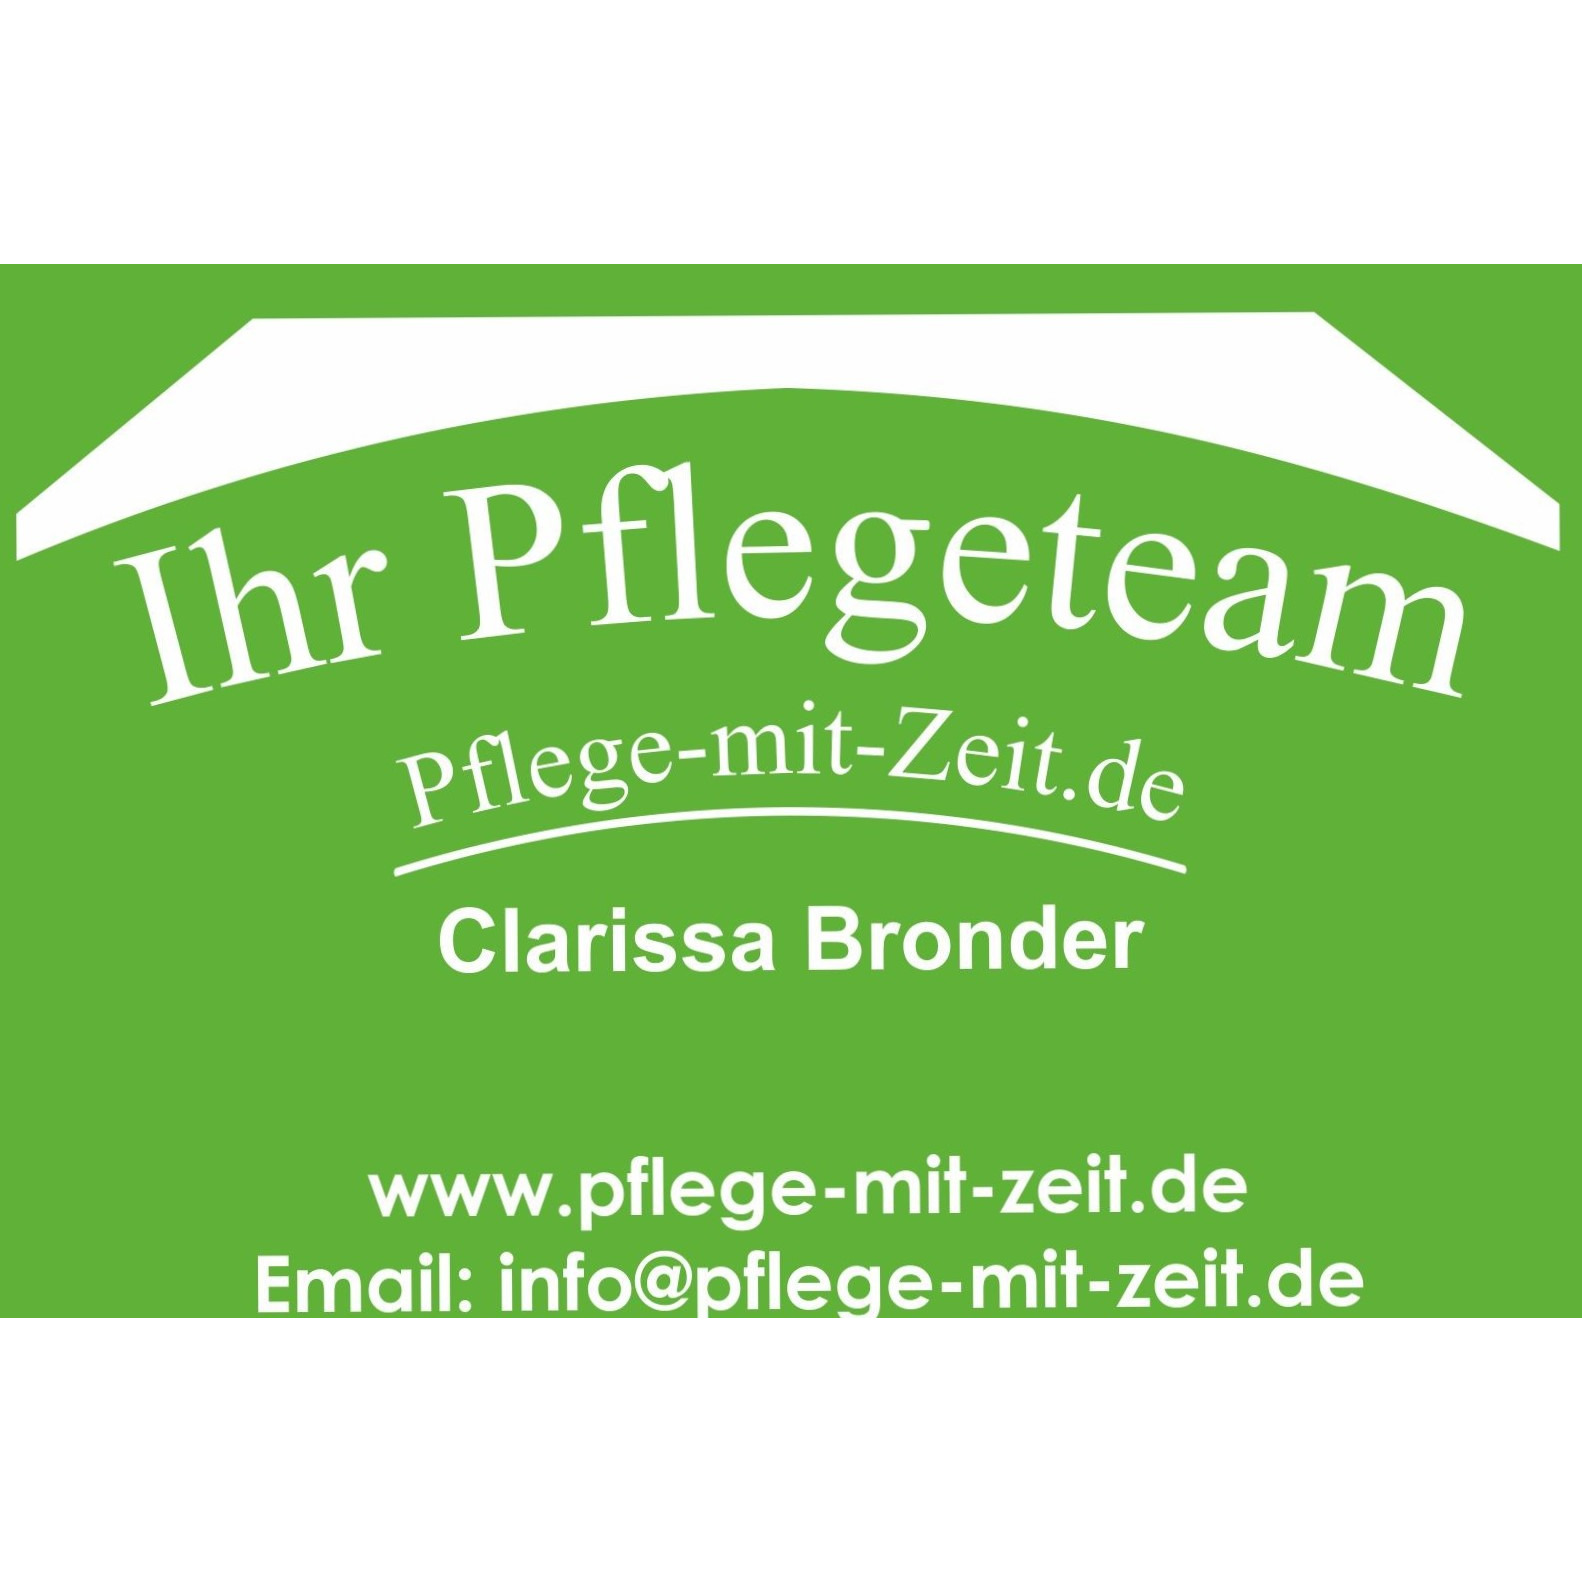 Ihr Pflegeteam Clarissa Bronder in Lünen - Logo